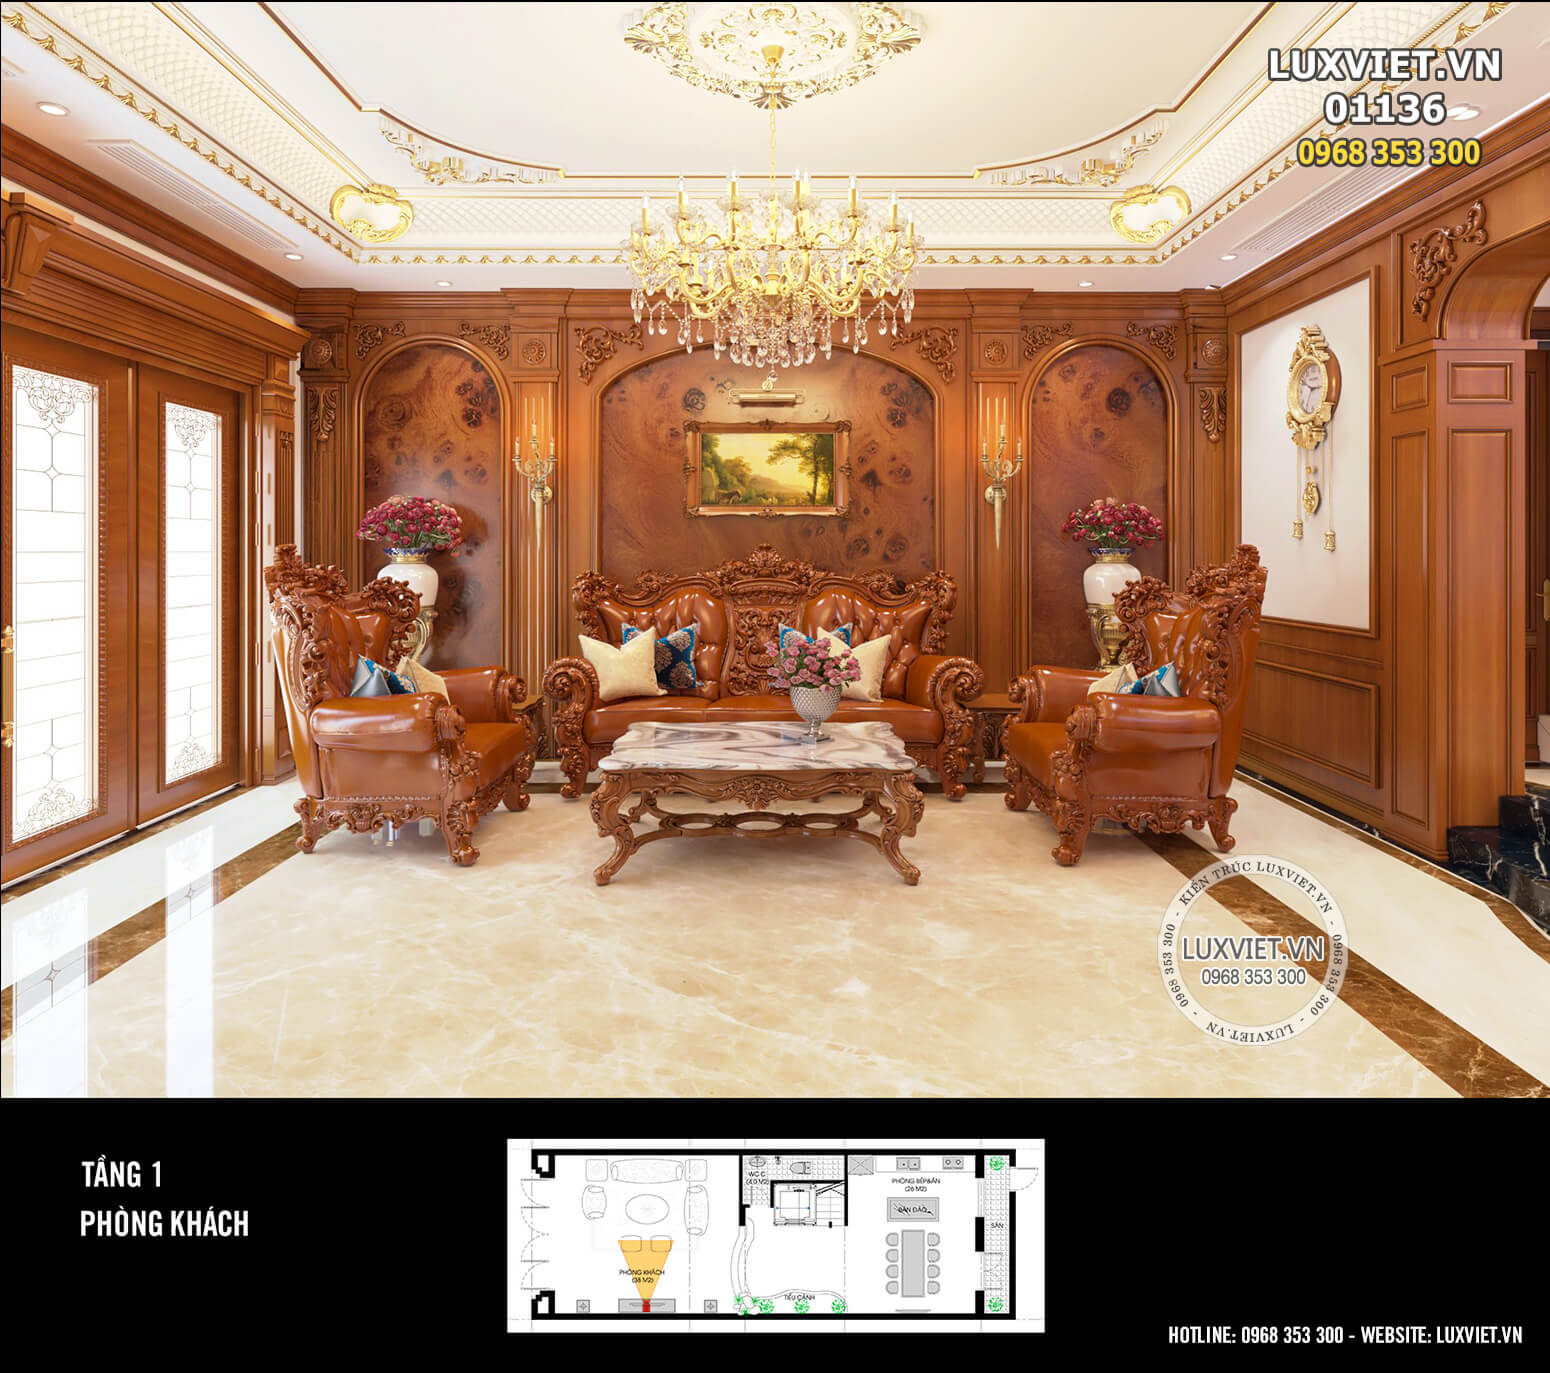 Thiết kế nội thất tân cổ điển đẹp, sang trọng, đẳng cấp – Mã số: Luxviet 01136